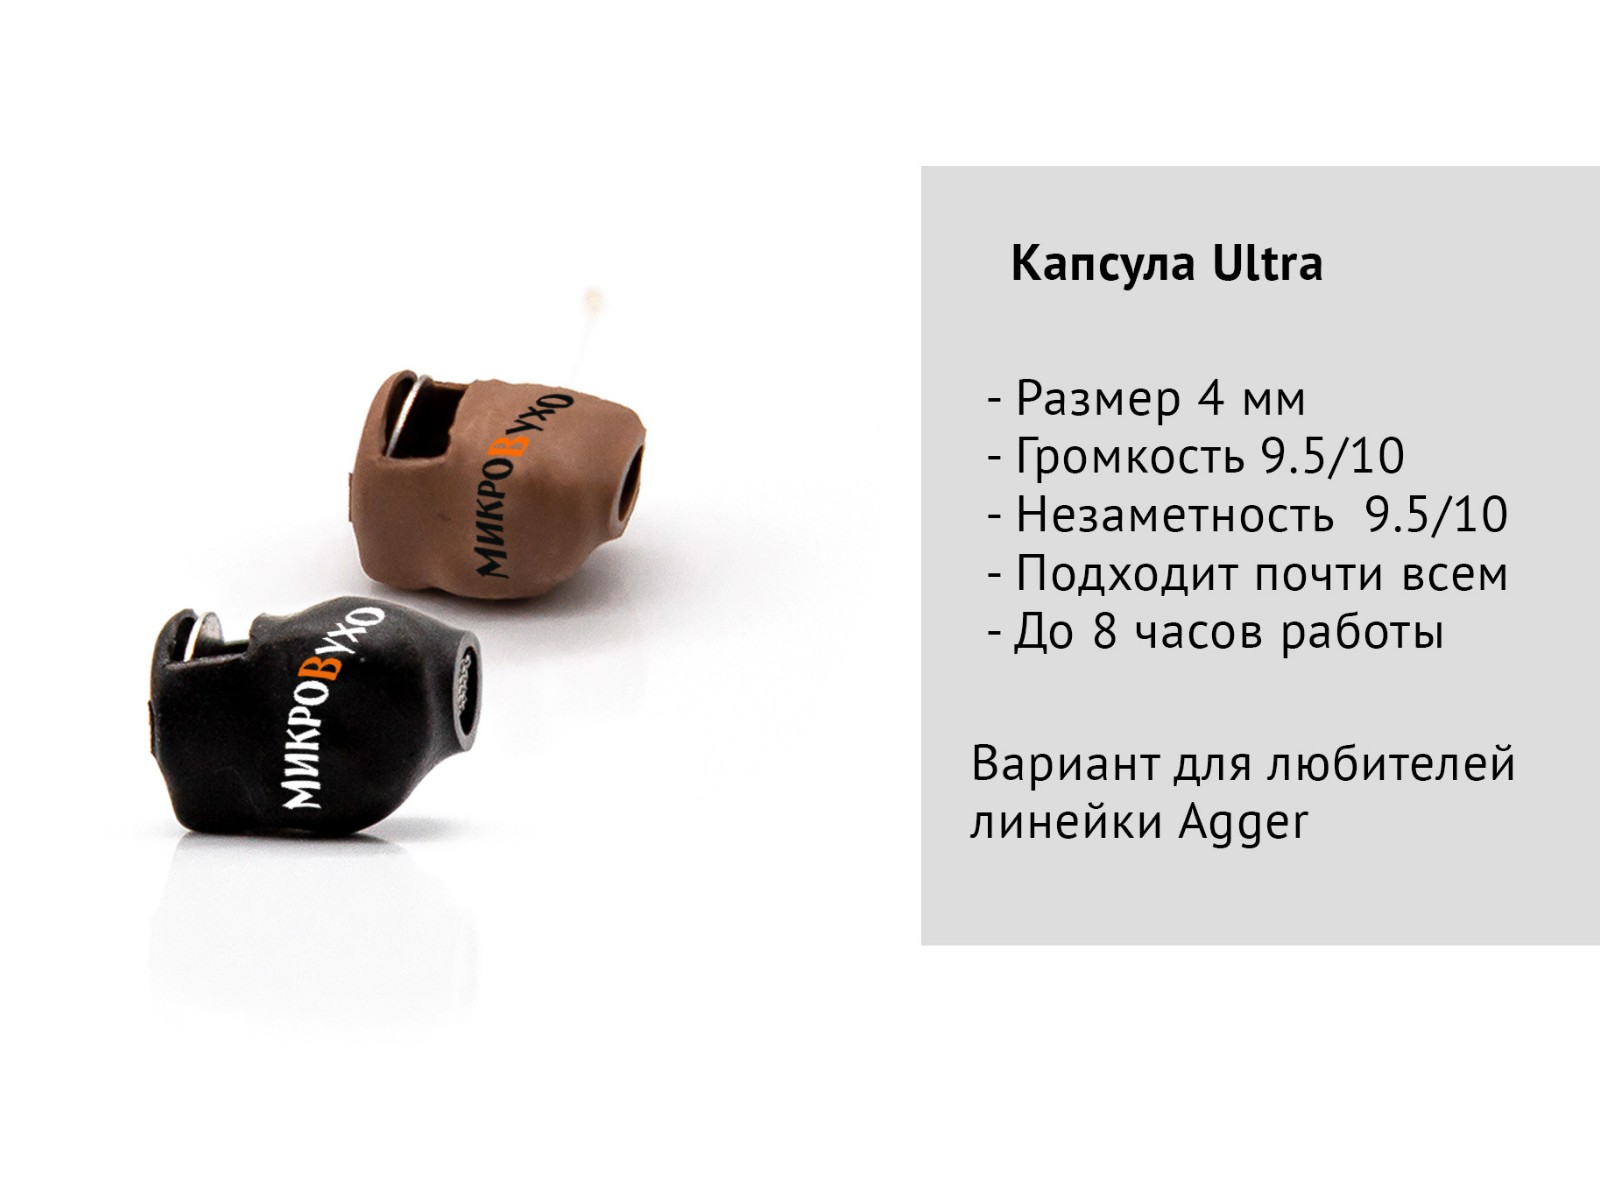 Универсальная гарнитура Bluetooth Box Pro Plus c капсулой Nano 4 мм и магнитами 2 мм - изображение 11